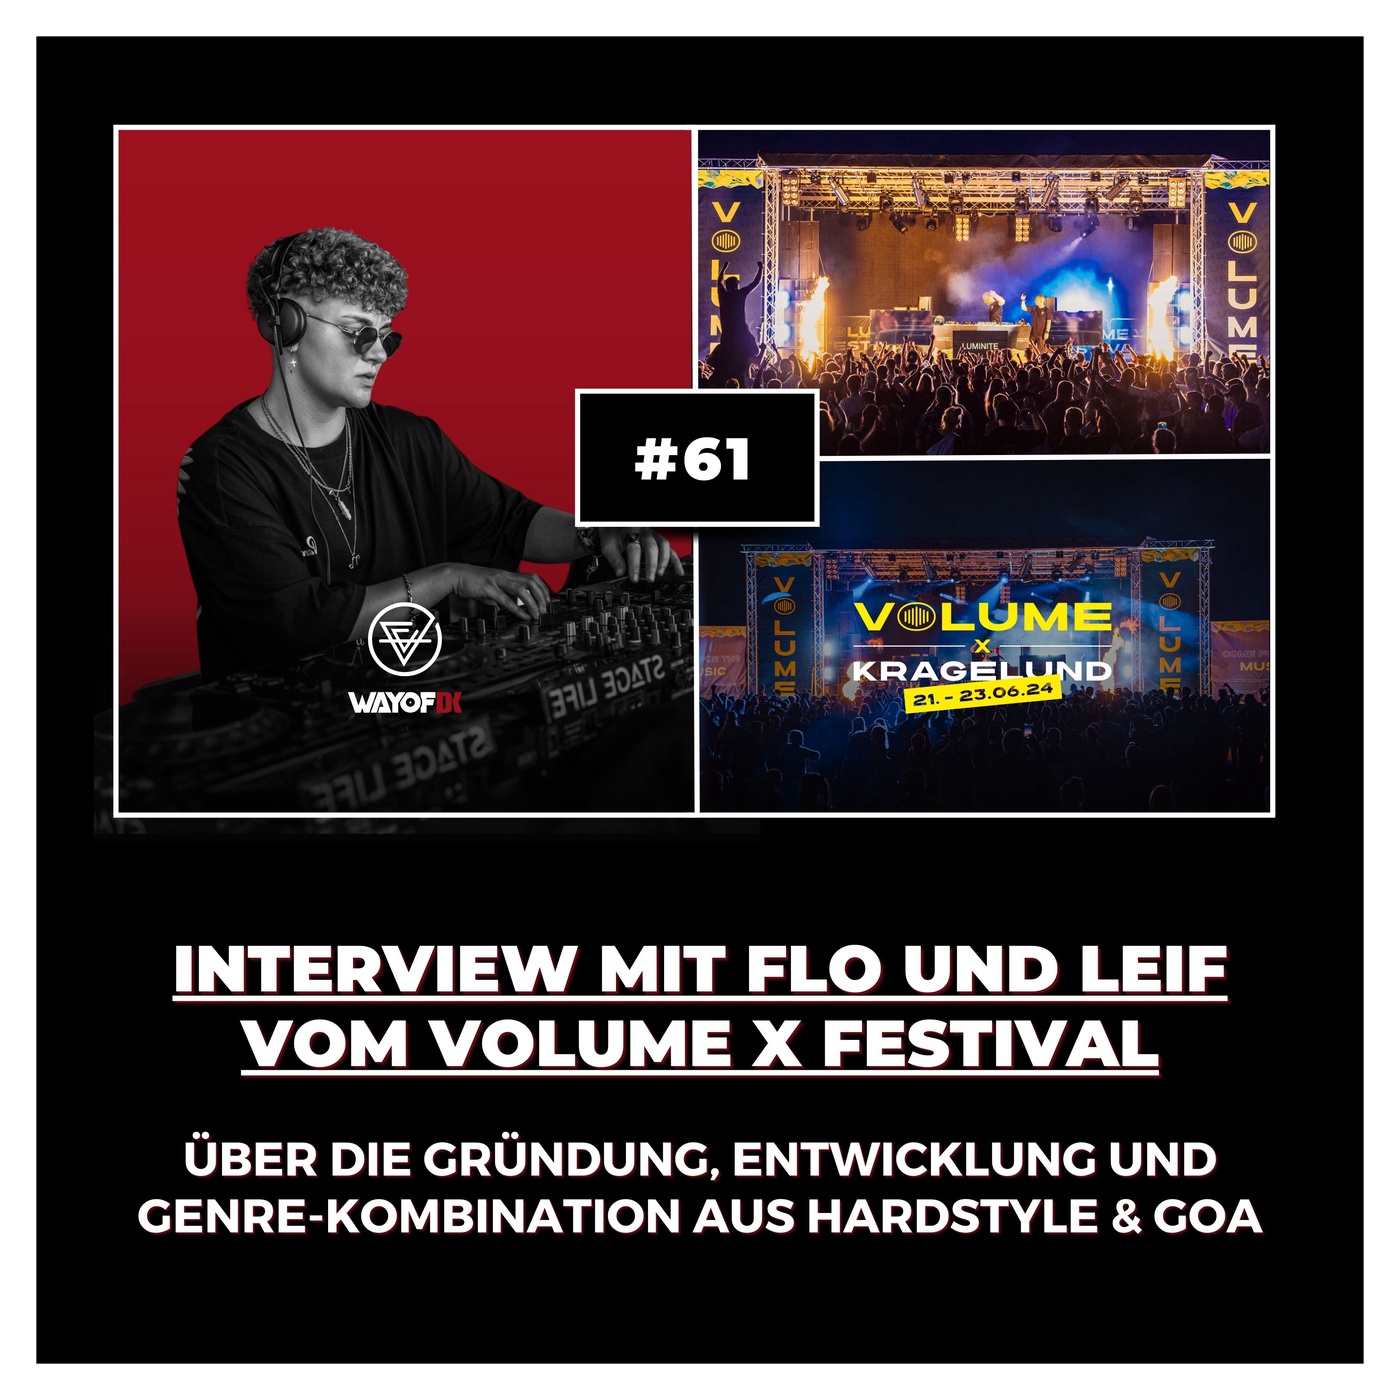 #61 Interview mit dem Volume X Festival: Über die Gründung, Entwicklung und Genre-Kombination aus Hardstyle & Goa